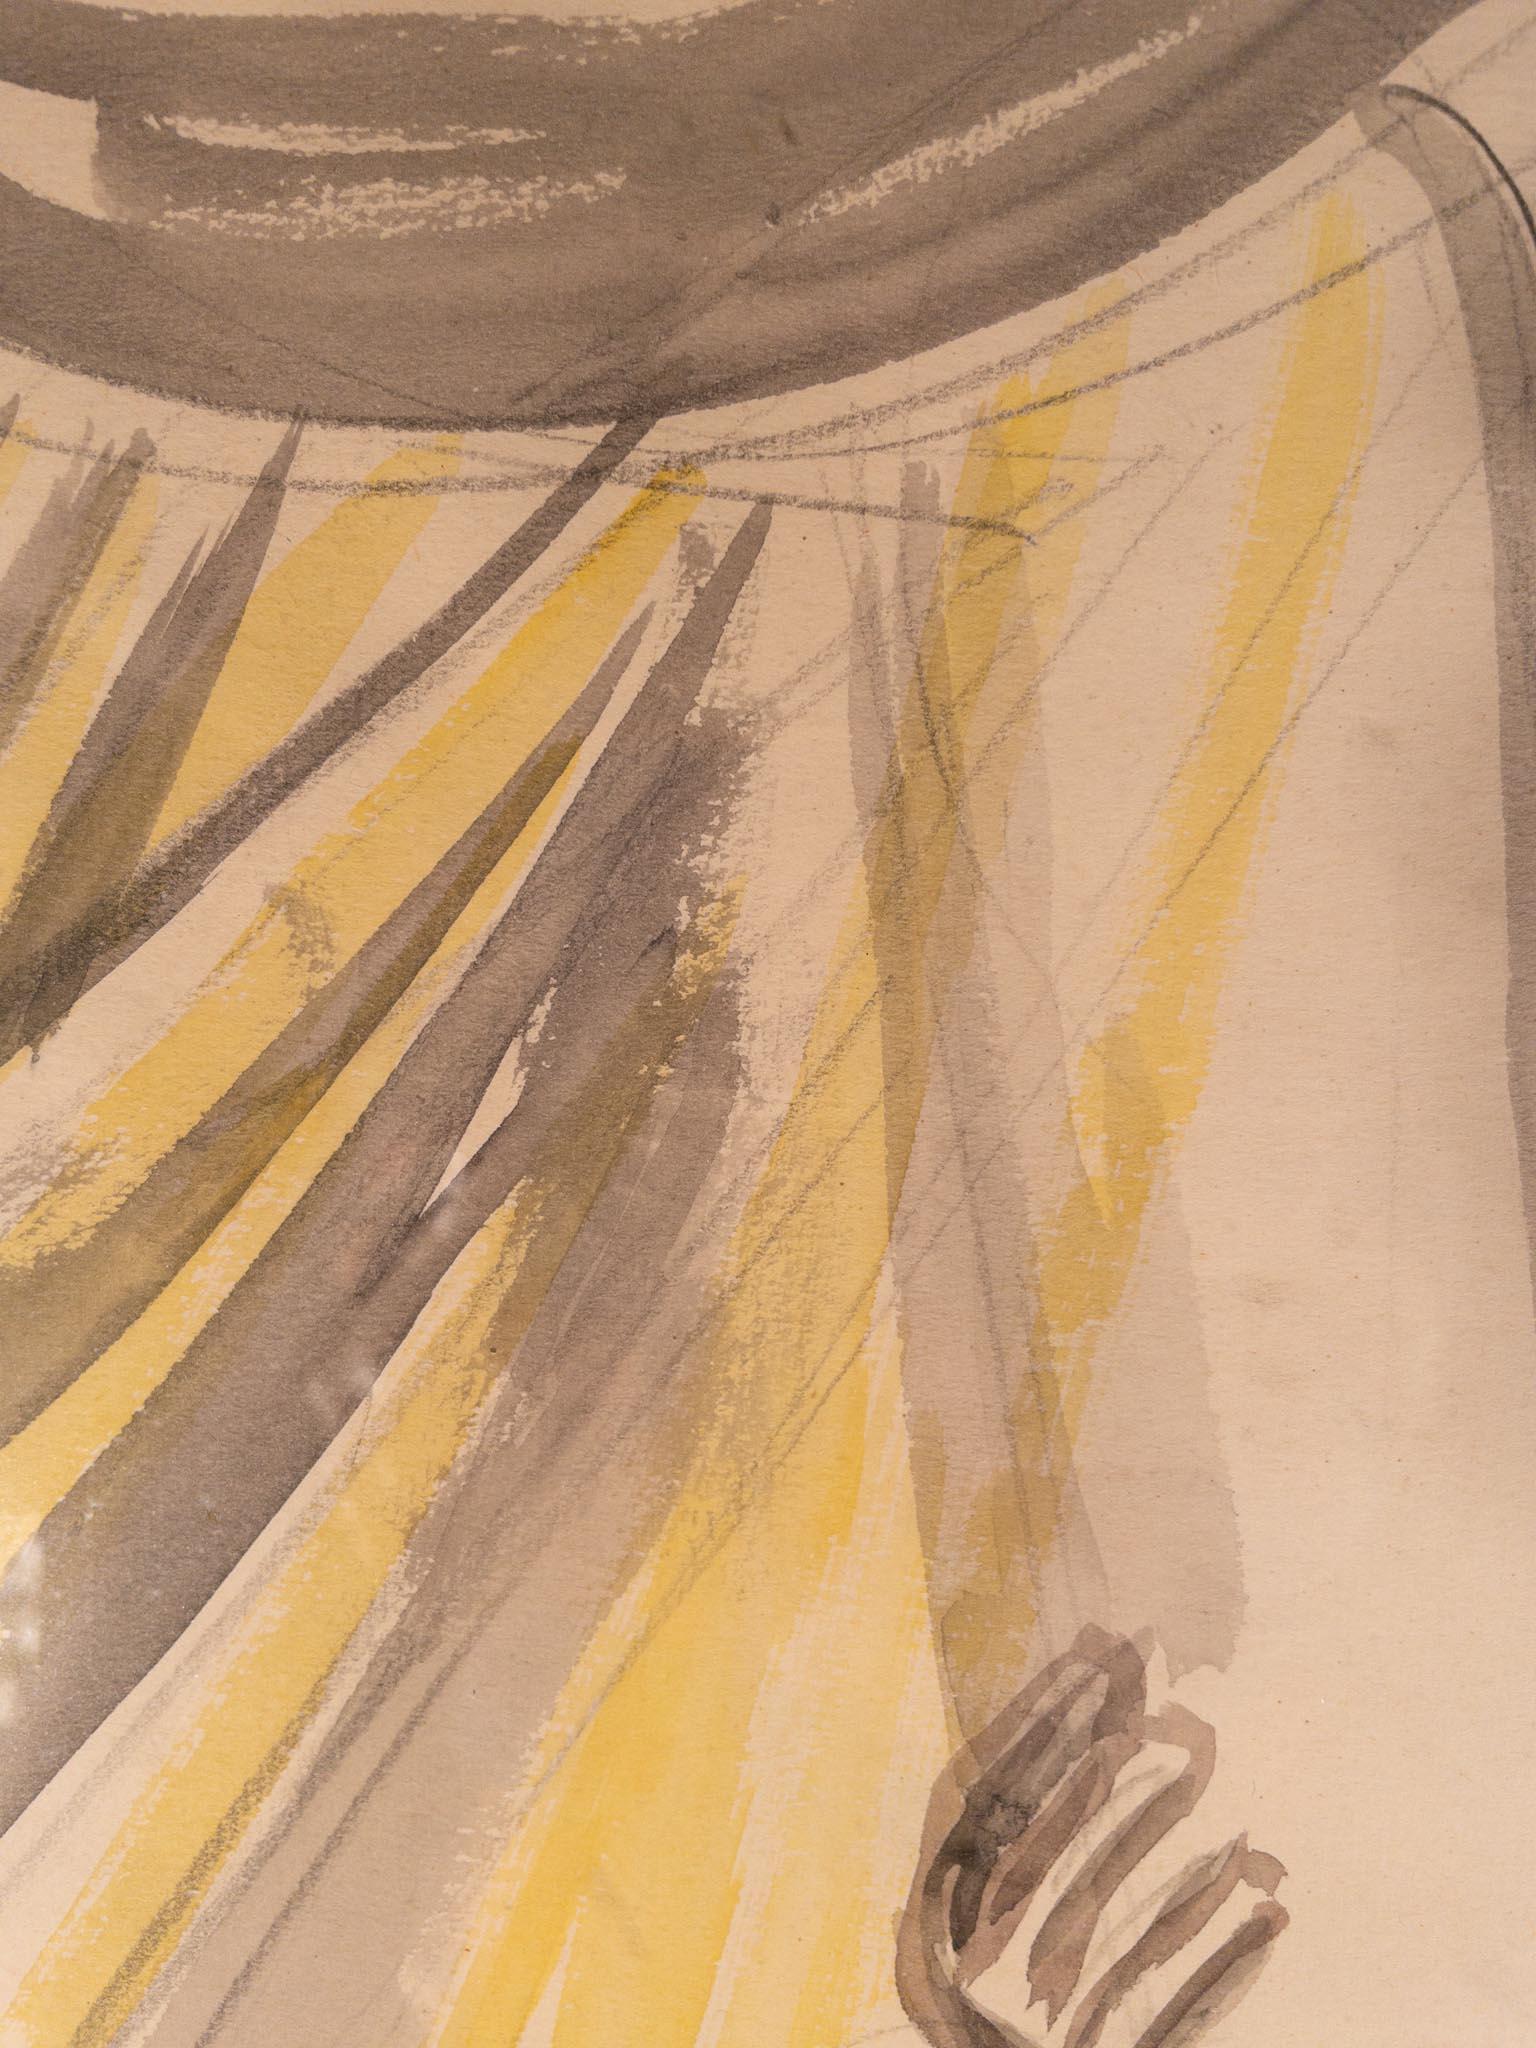 Moses mit den Zehn Geboten von Sir Jacob Epstein (1880-1959)
Bleistift und Aquarell auf Papier
22 x 16 ⅝ Zoll ungerahmt (55,88 x 42,24 cm)
28 ½ x 23 Zoll gerahmt (72,39 x 58,42 cm)
Signiert unten links

Beschreibung:
Auf diesem figurativen Aquarell